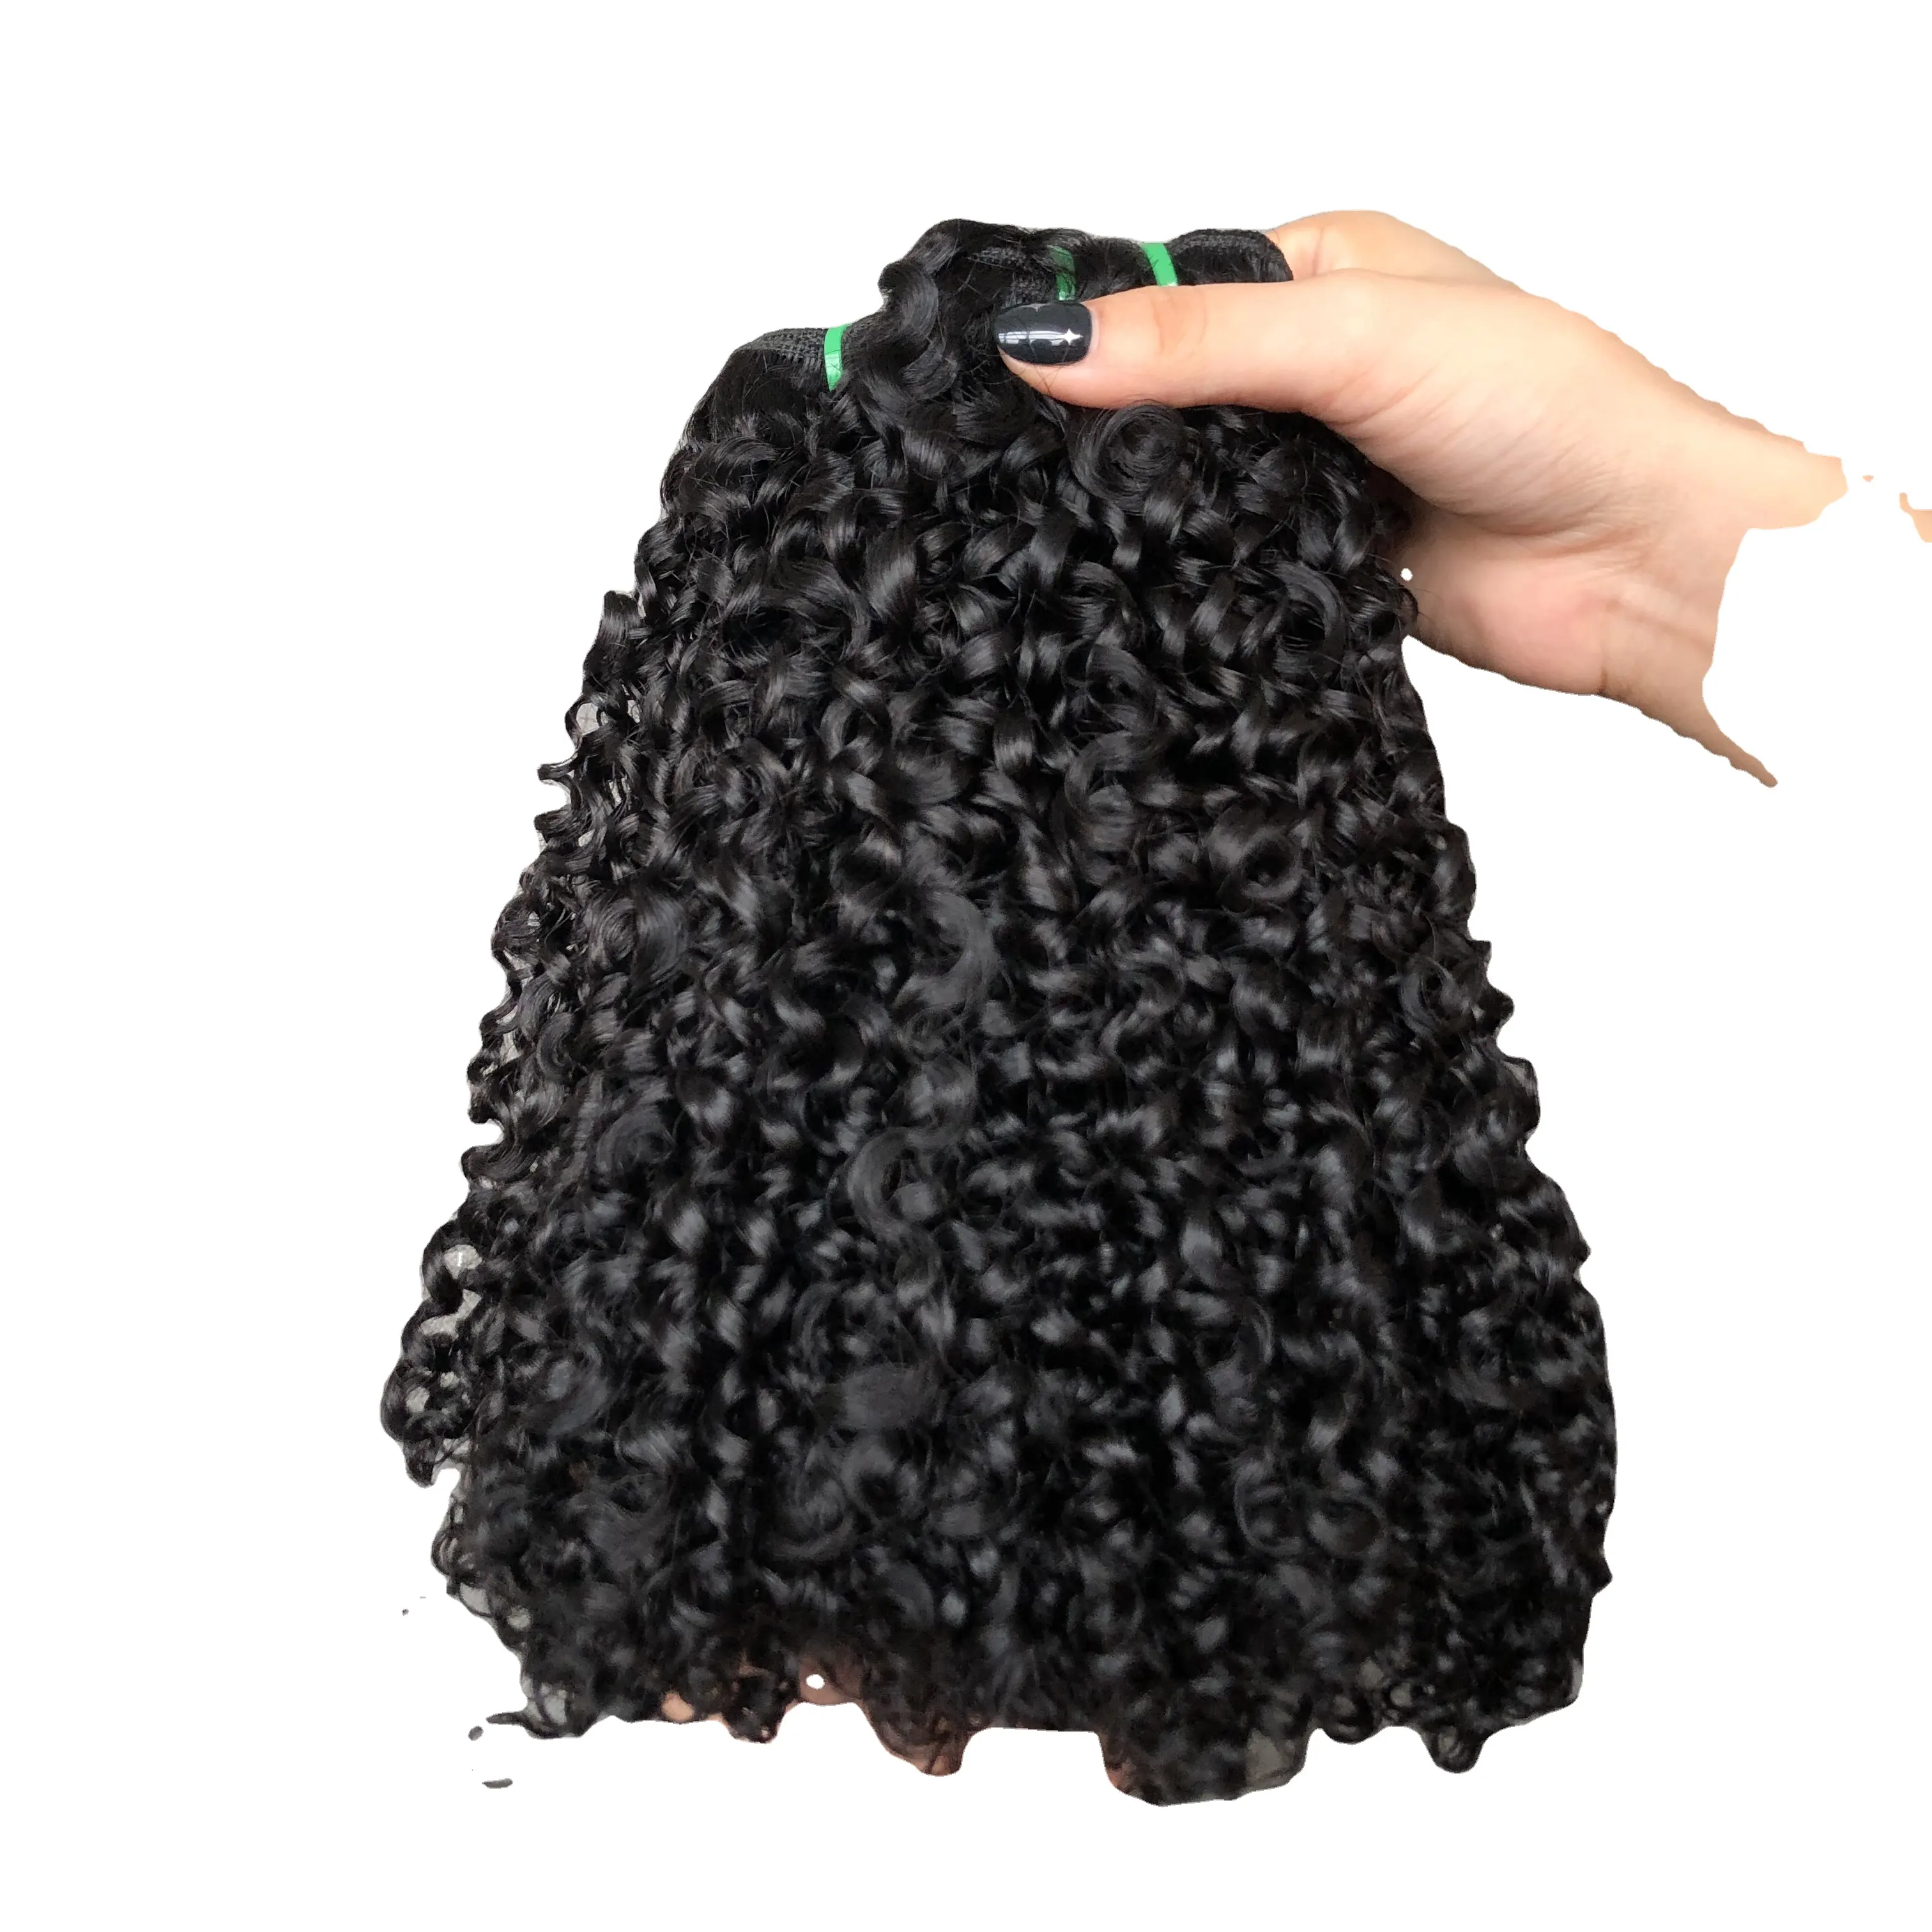 Yüksek kaliteli saç demeti çift çizilmiş Pixie kıvırmak paket 100% insan saçı brezilyalı saç doğal renk makinesi çift atkı